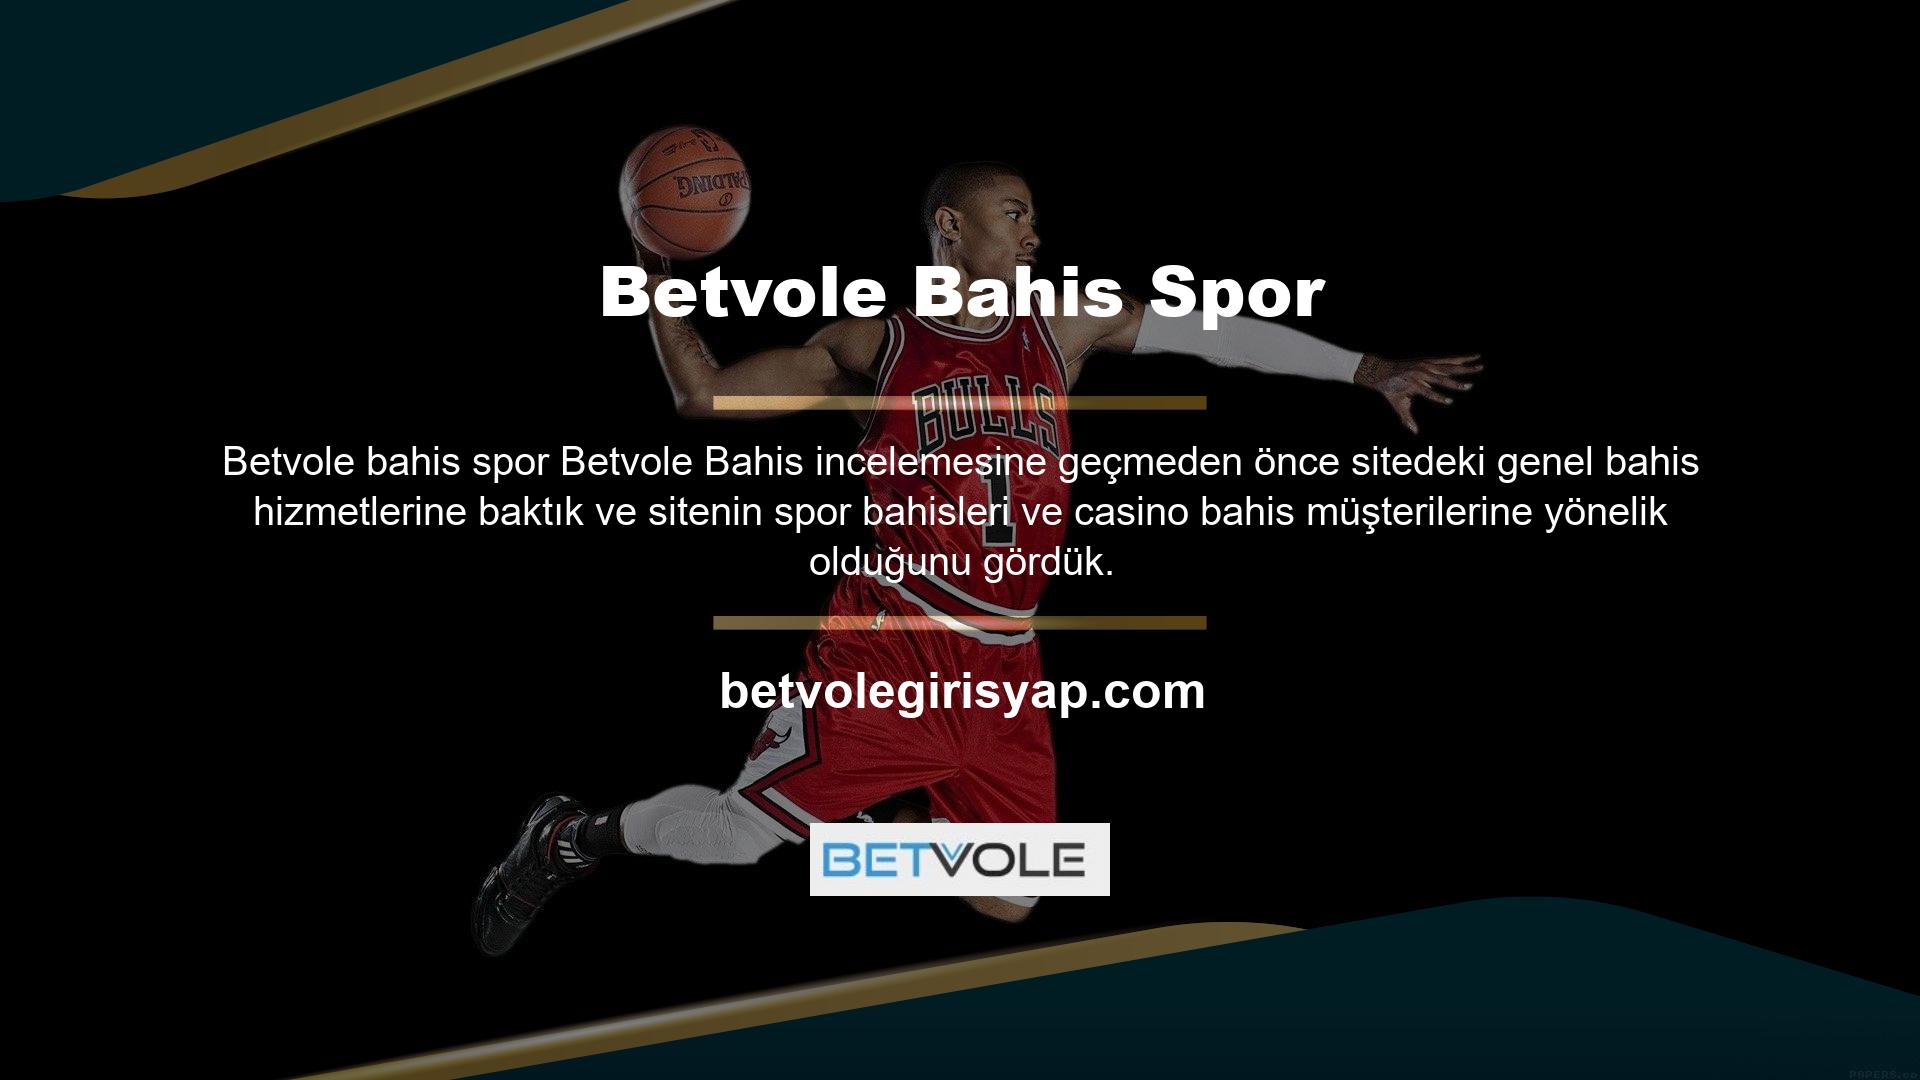 Spor bahisleri bölümünde sporla ilgili çeşitli oyunlara bahisler sunulurken, Betvole bahis sporları casino bölümünde rulet, slot, bakara, blackjack ve poker gibi oyun seçenekleri sunulmaktadır